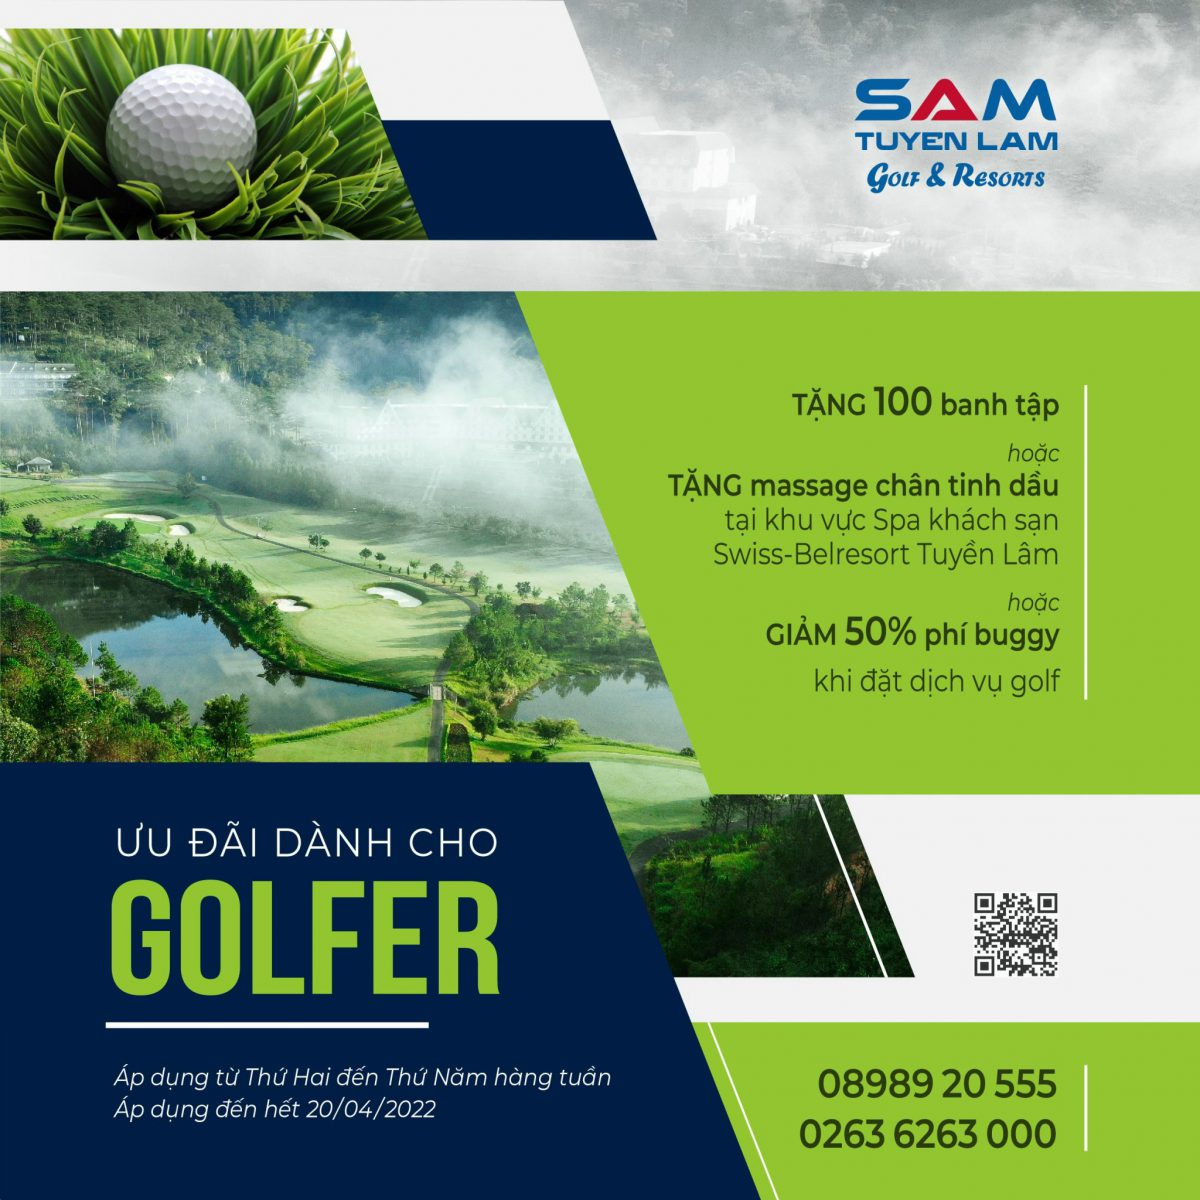 (Tiếng Việt) Giao mùa – Ưu đãi dành cho Golfers